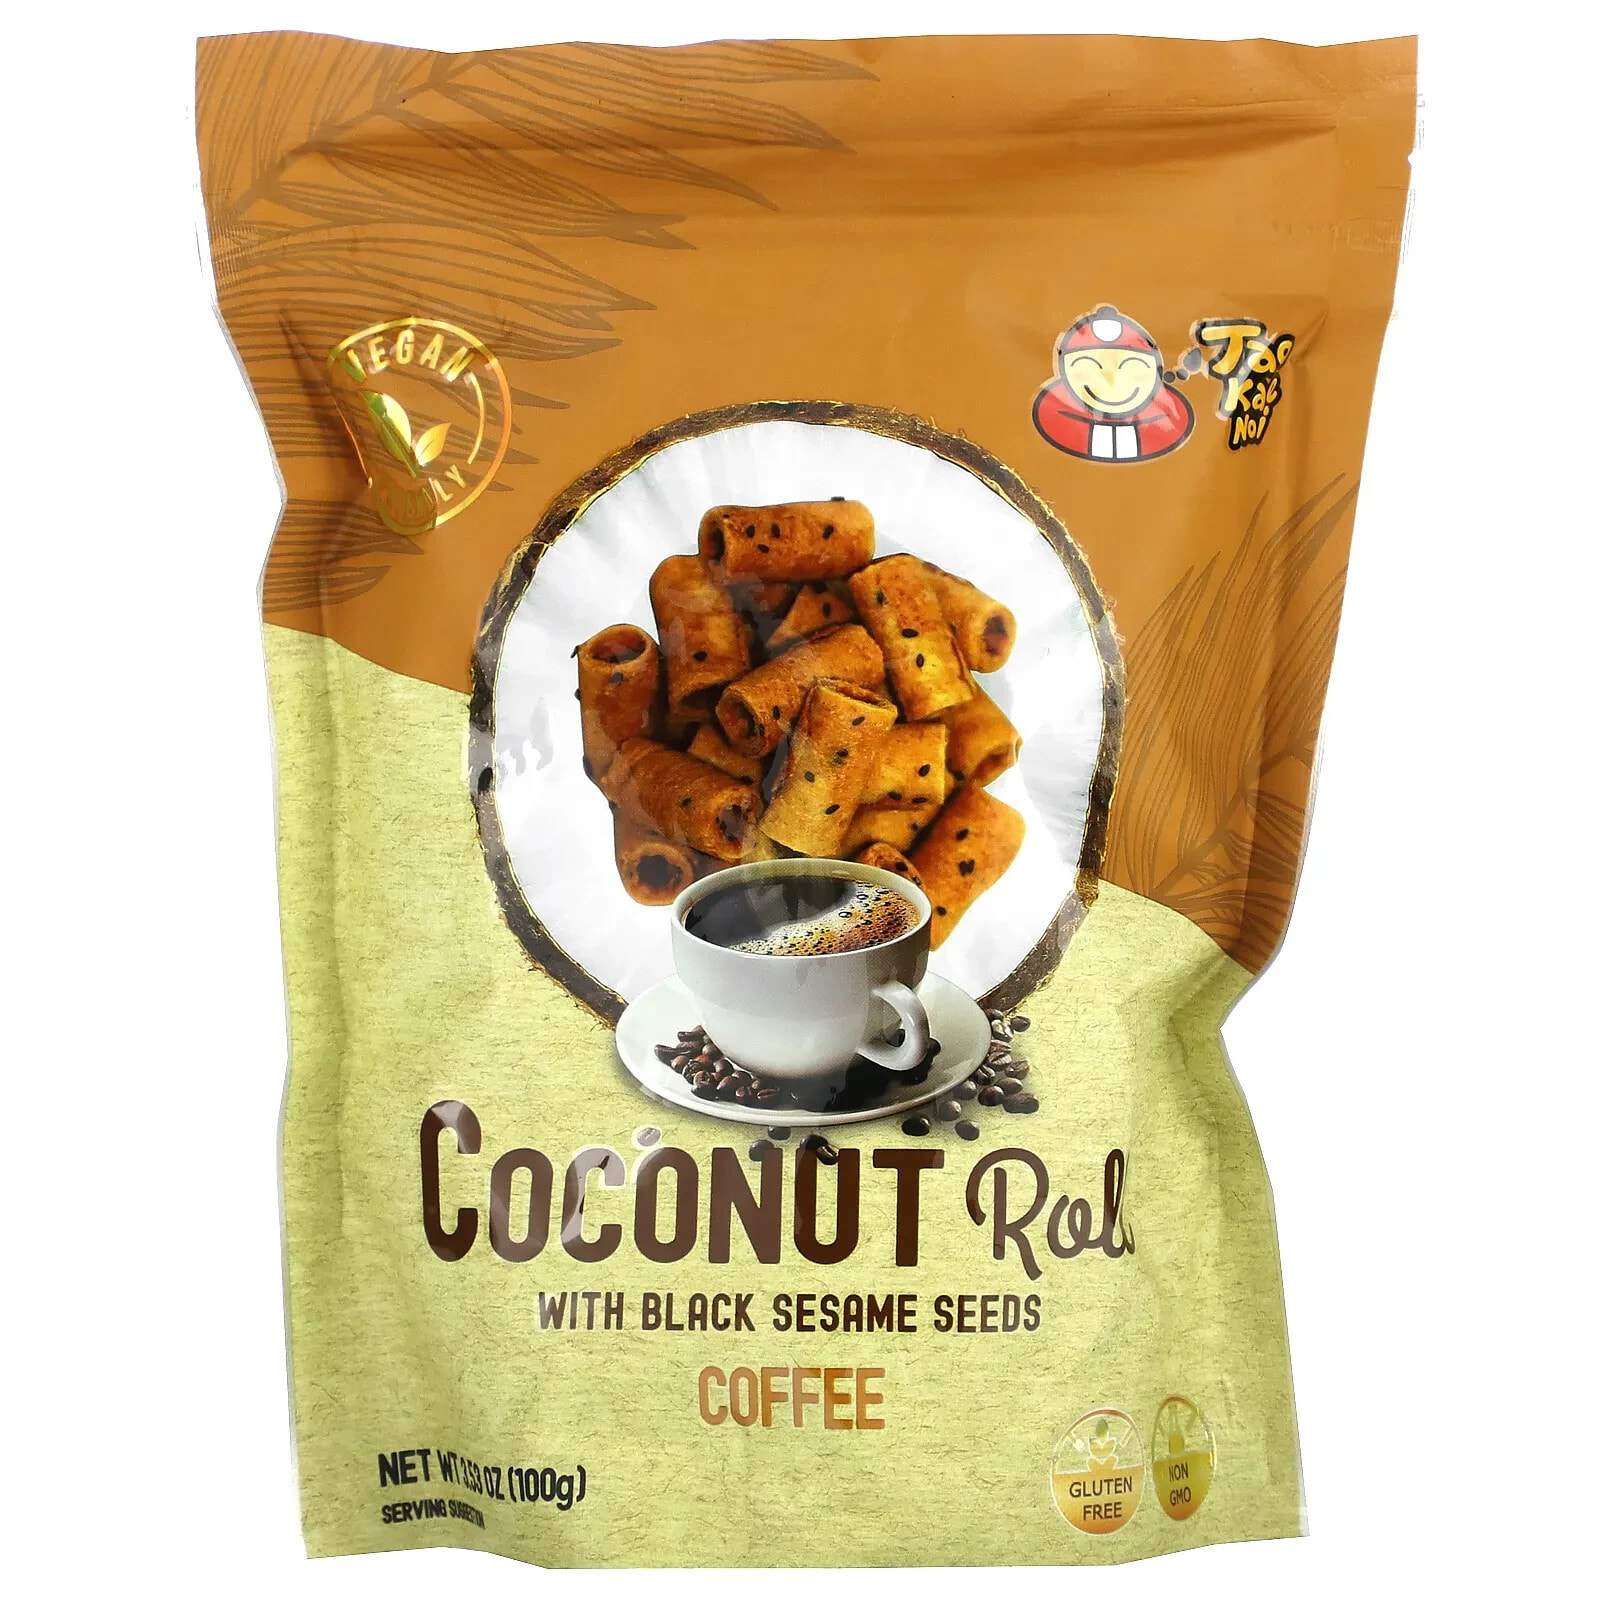 Coconut Roll with Black Sesame Seeds, Original, 3.53 oz (100 g)